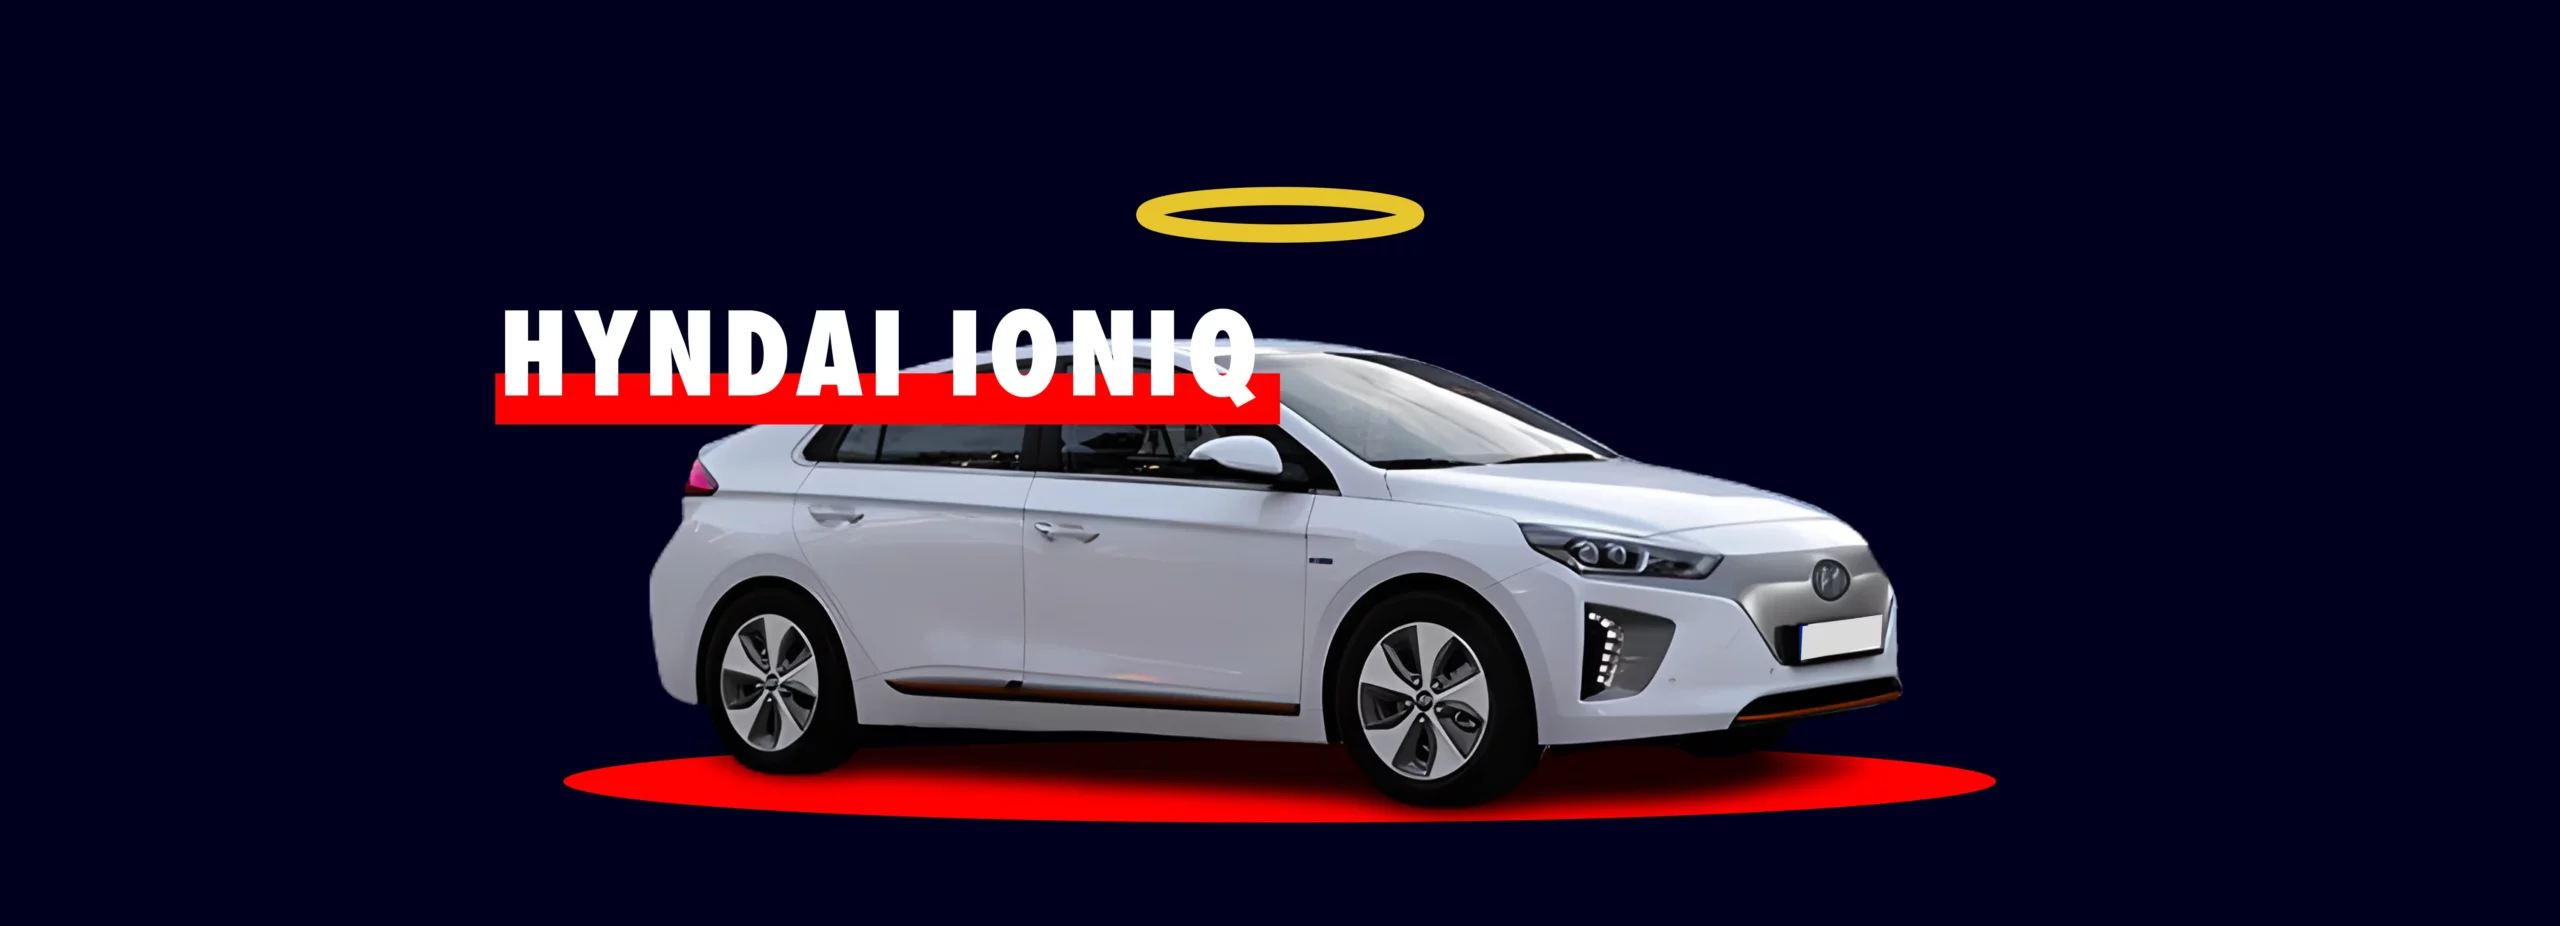 Hyundai Ioniq blanche hybride rechargeable